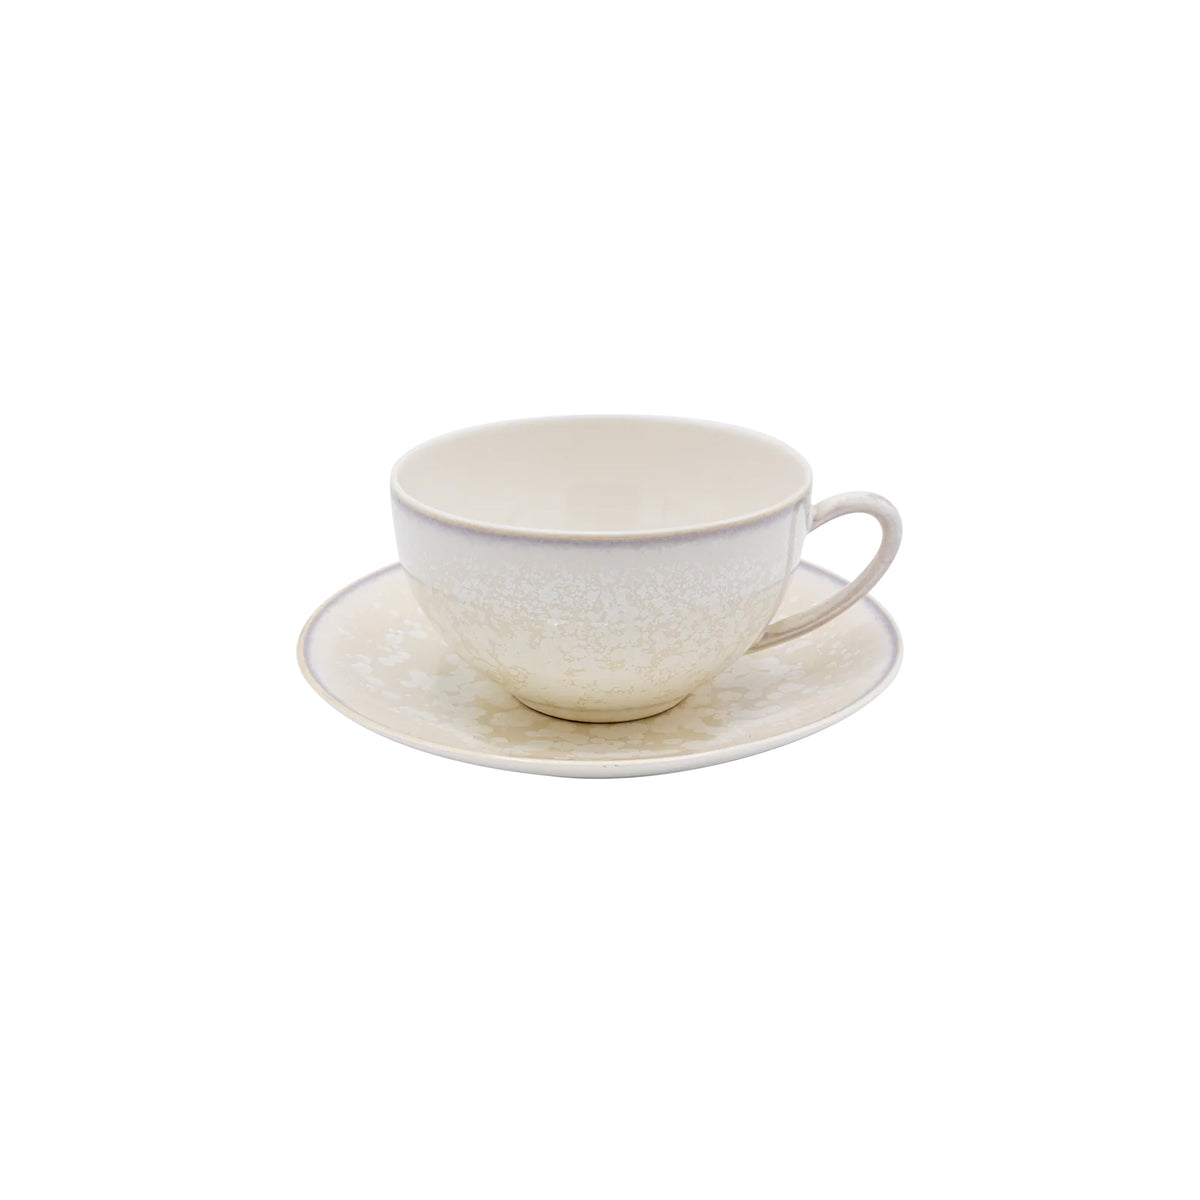 SONG Perle - Tea set (cup & saucer)